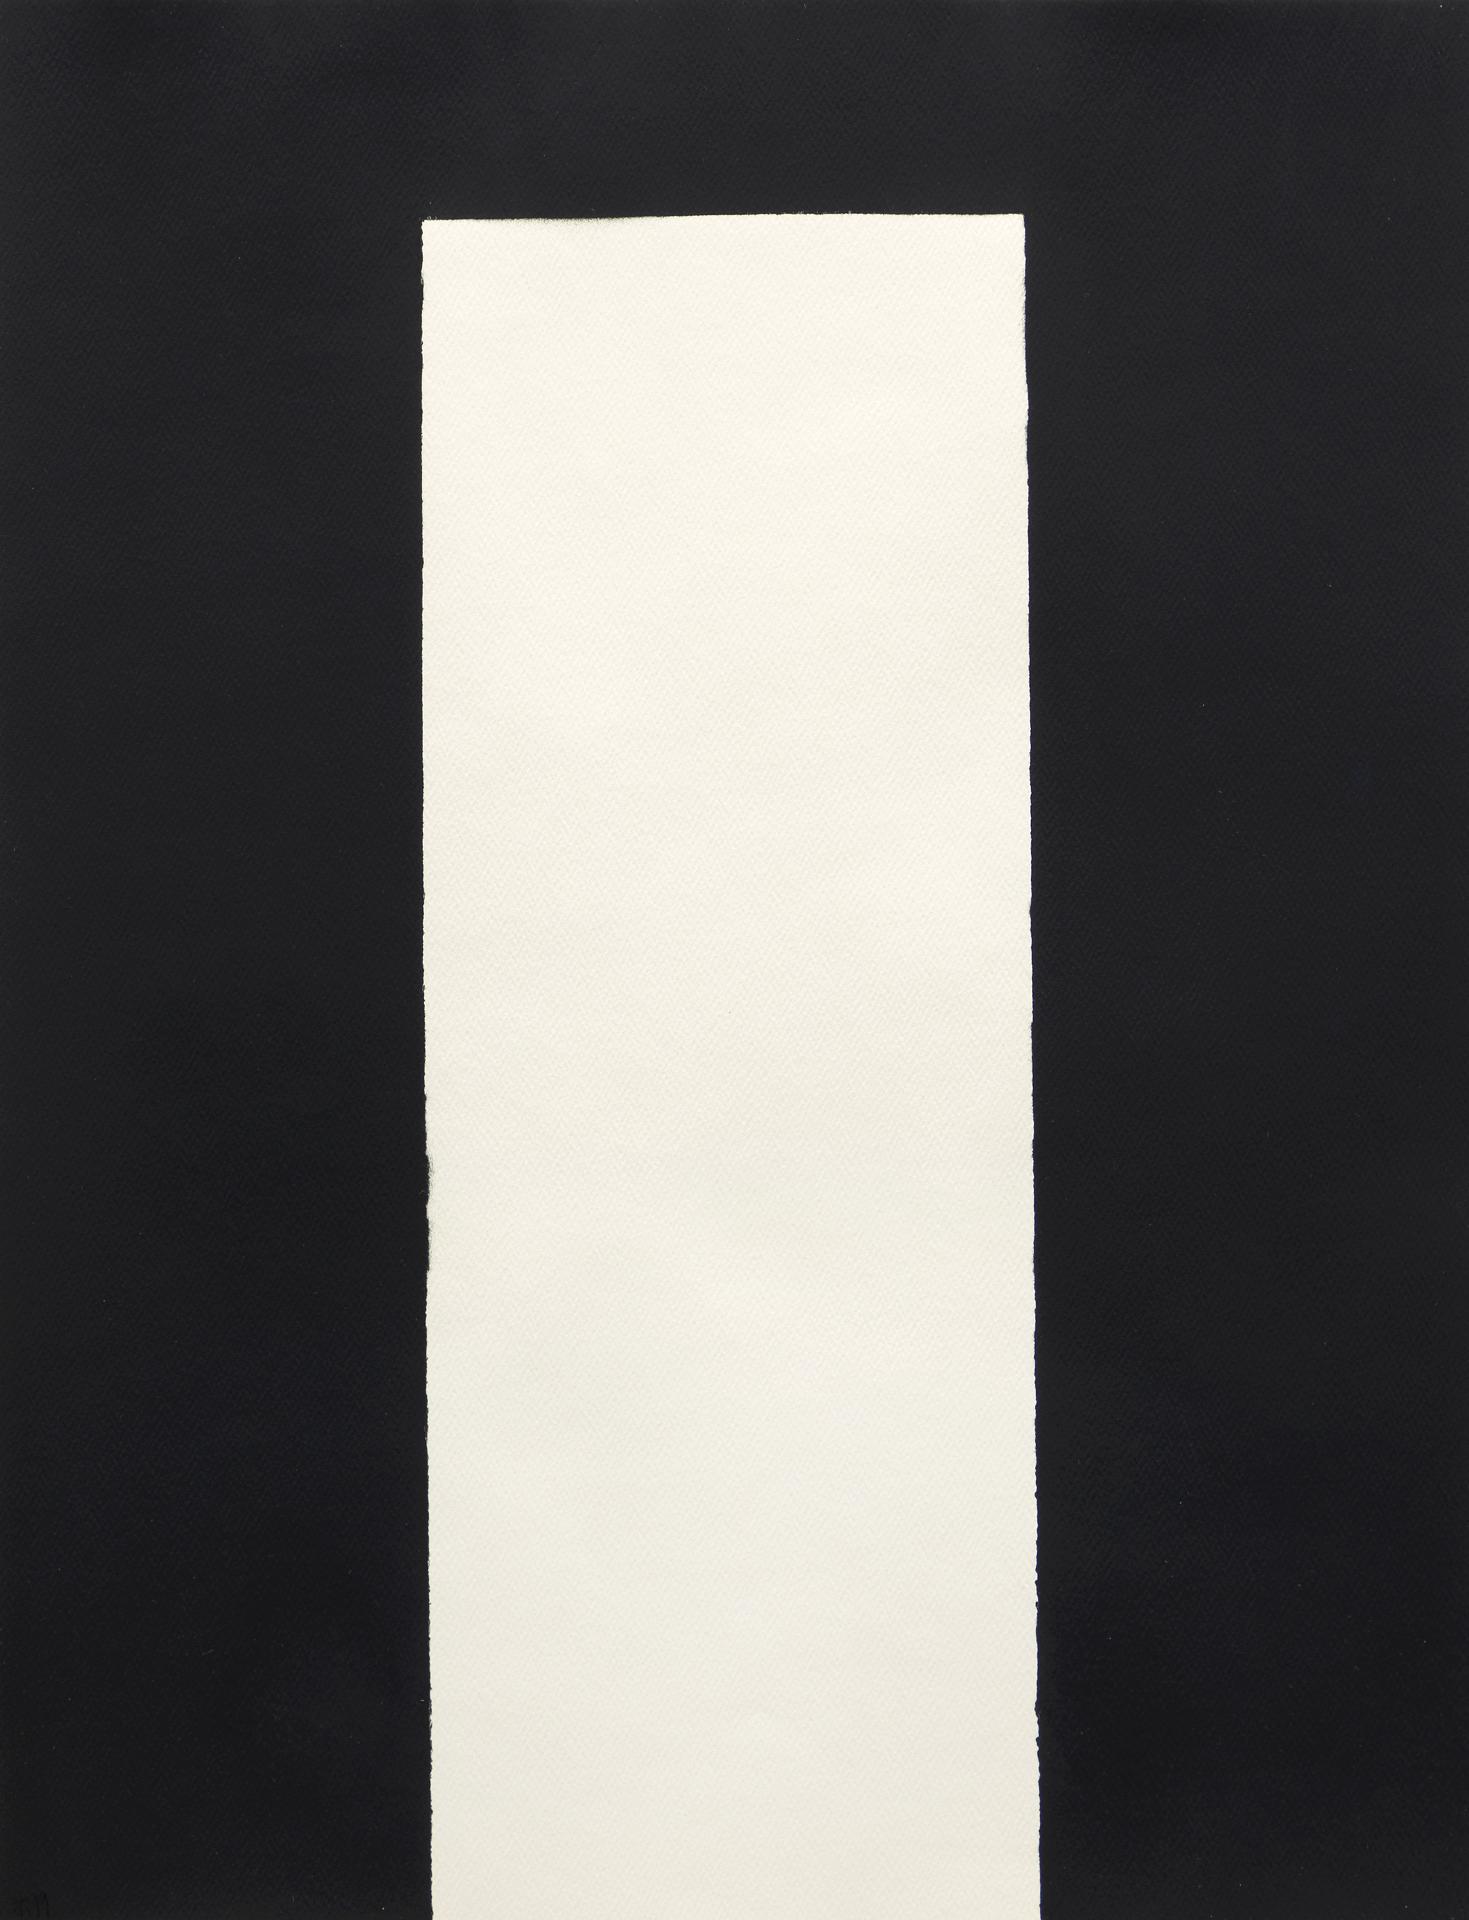 Claude Tousignant (1932) - Sans titre / Untitled, 1999